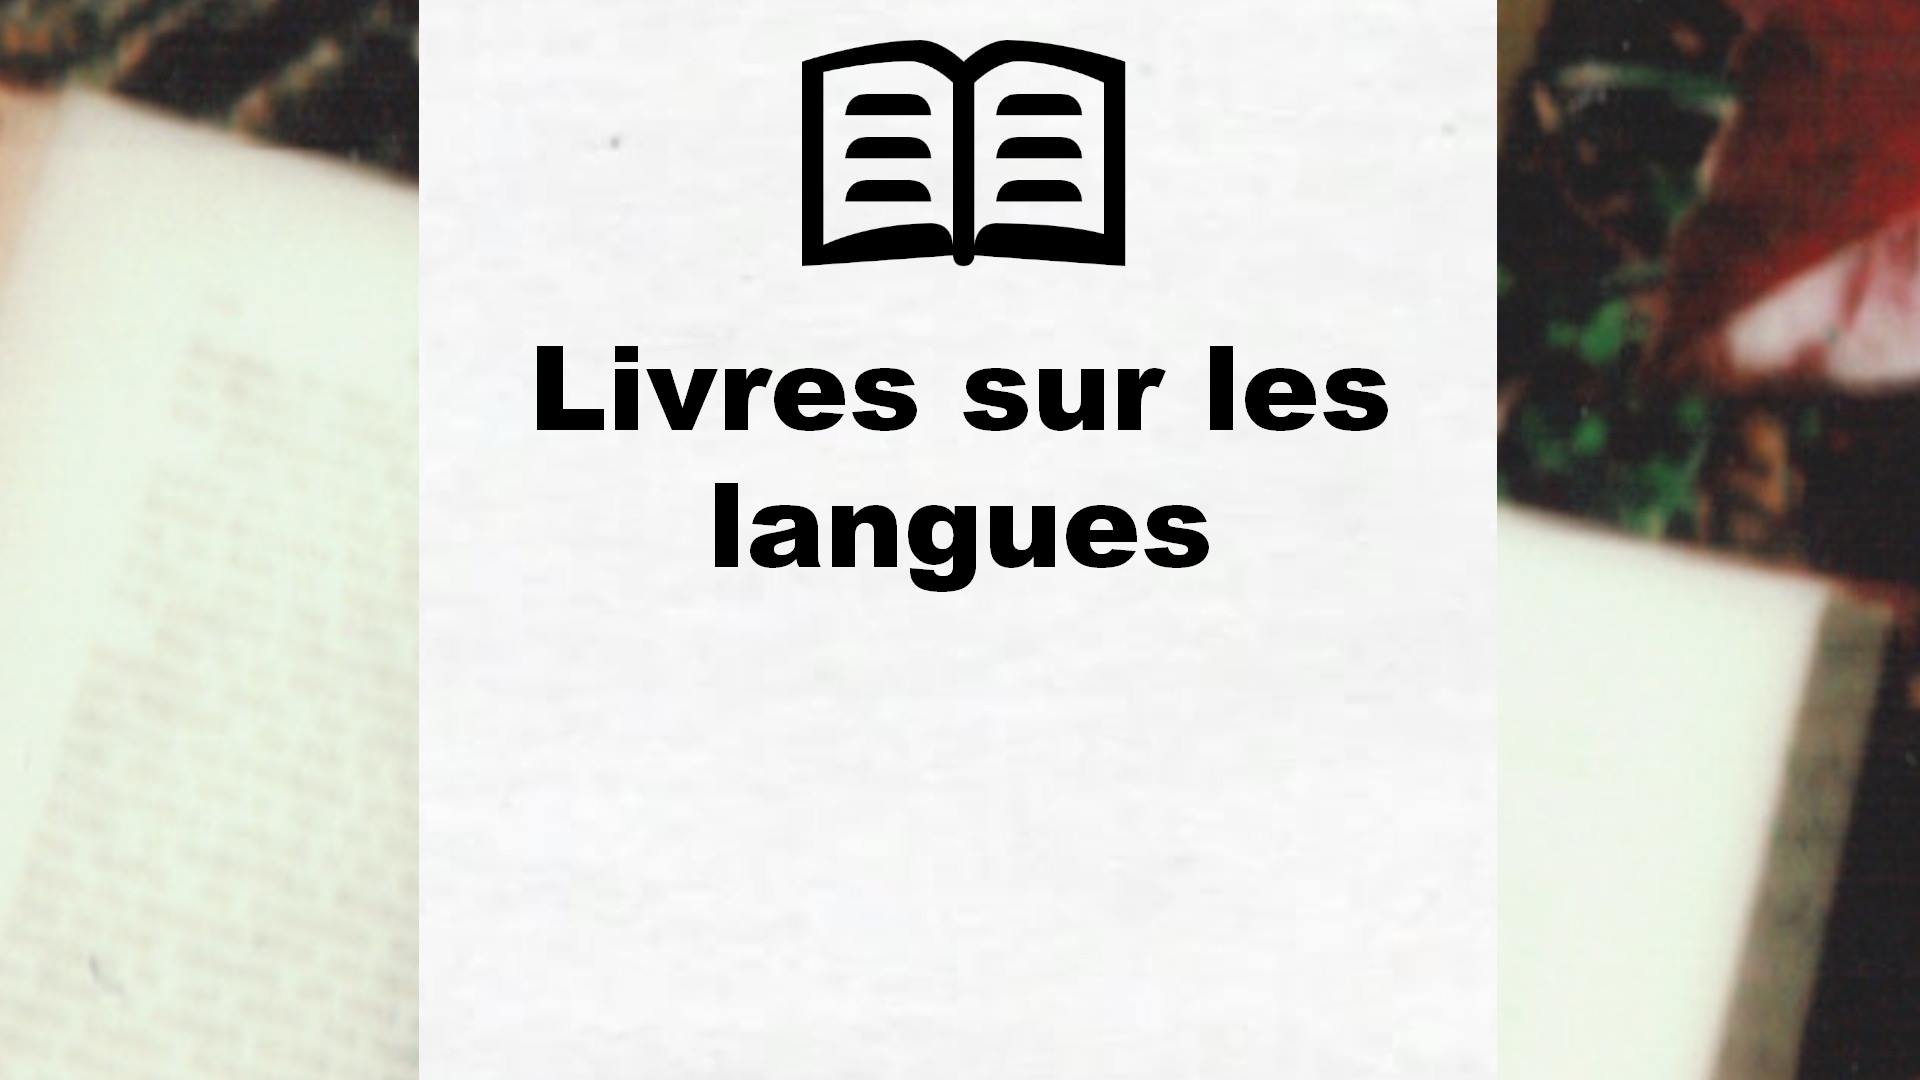 Livres sur les langues